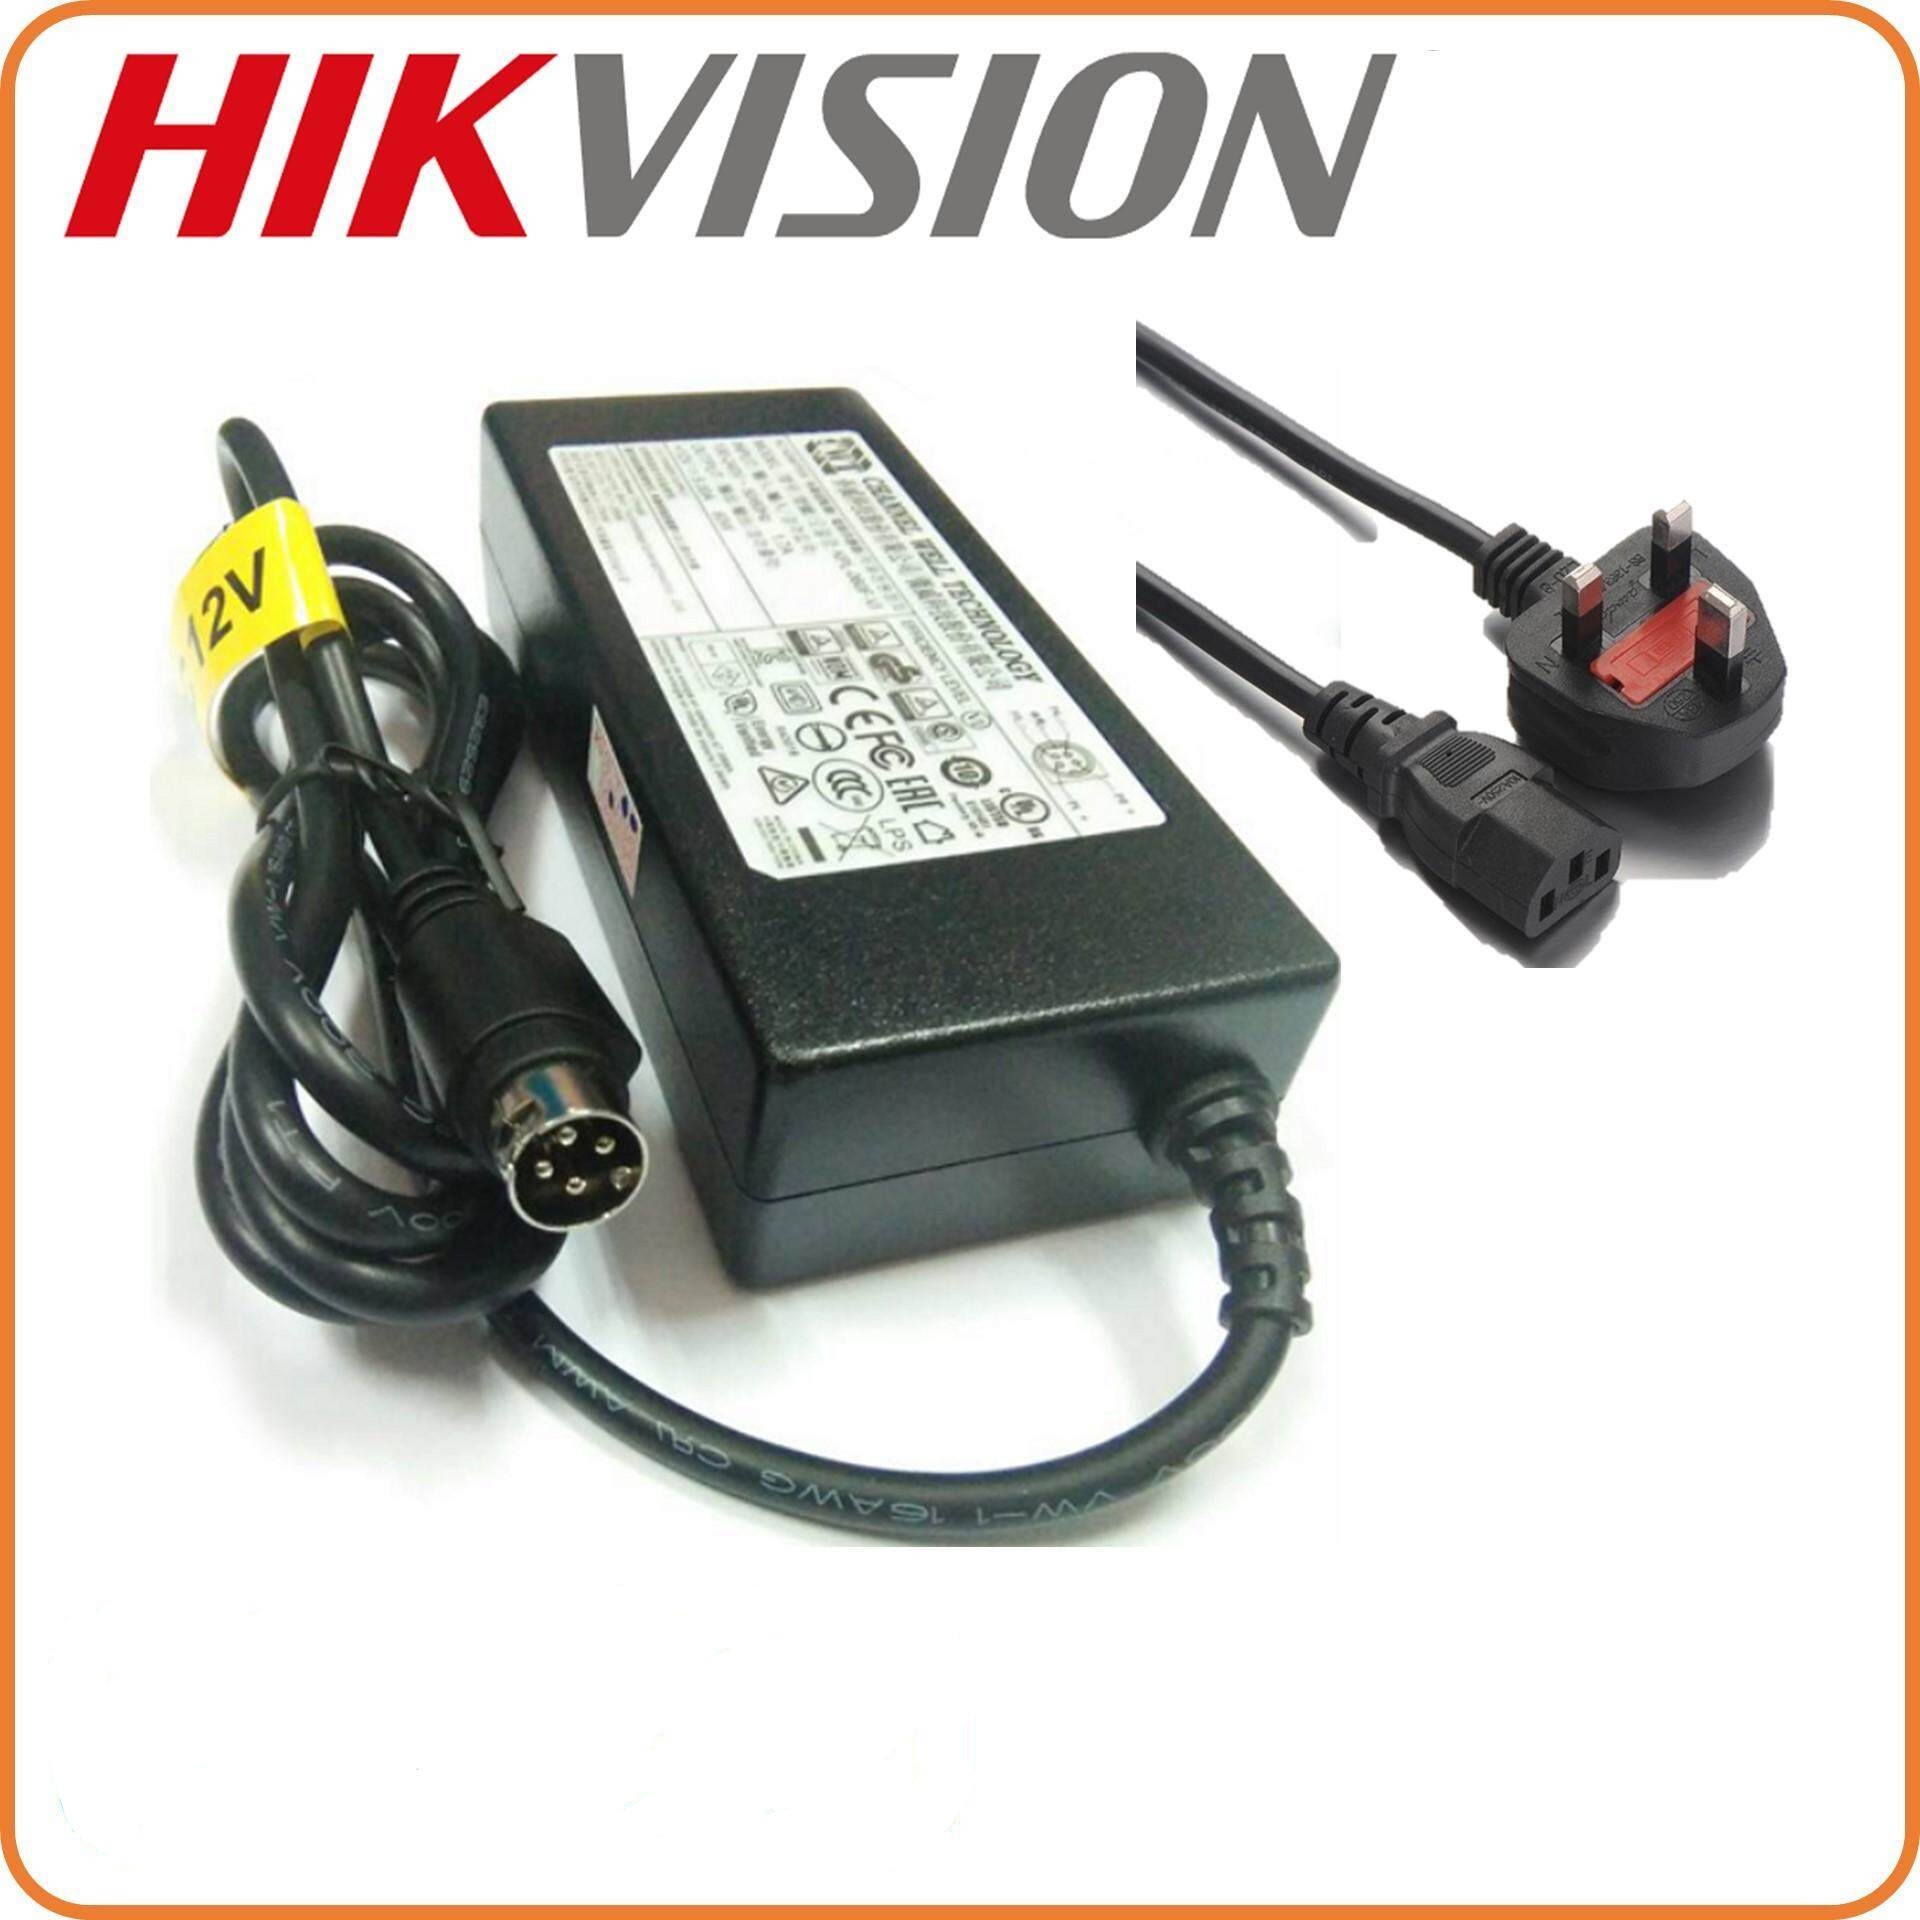 Adapter KPL-060F-VI,desktop, 12V5A,60W,4P DVR ADAPTOR HIKVISION